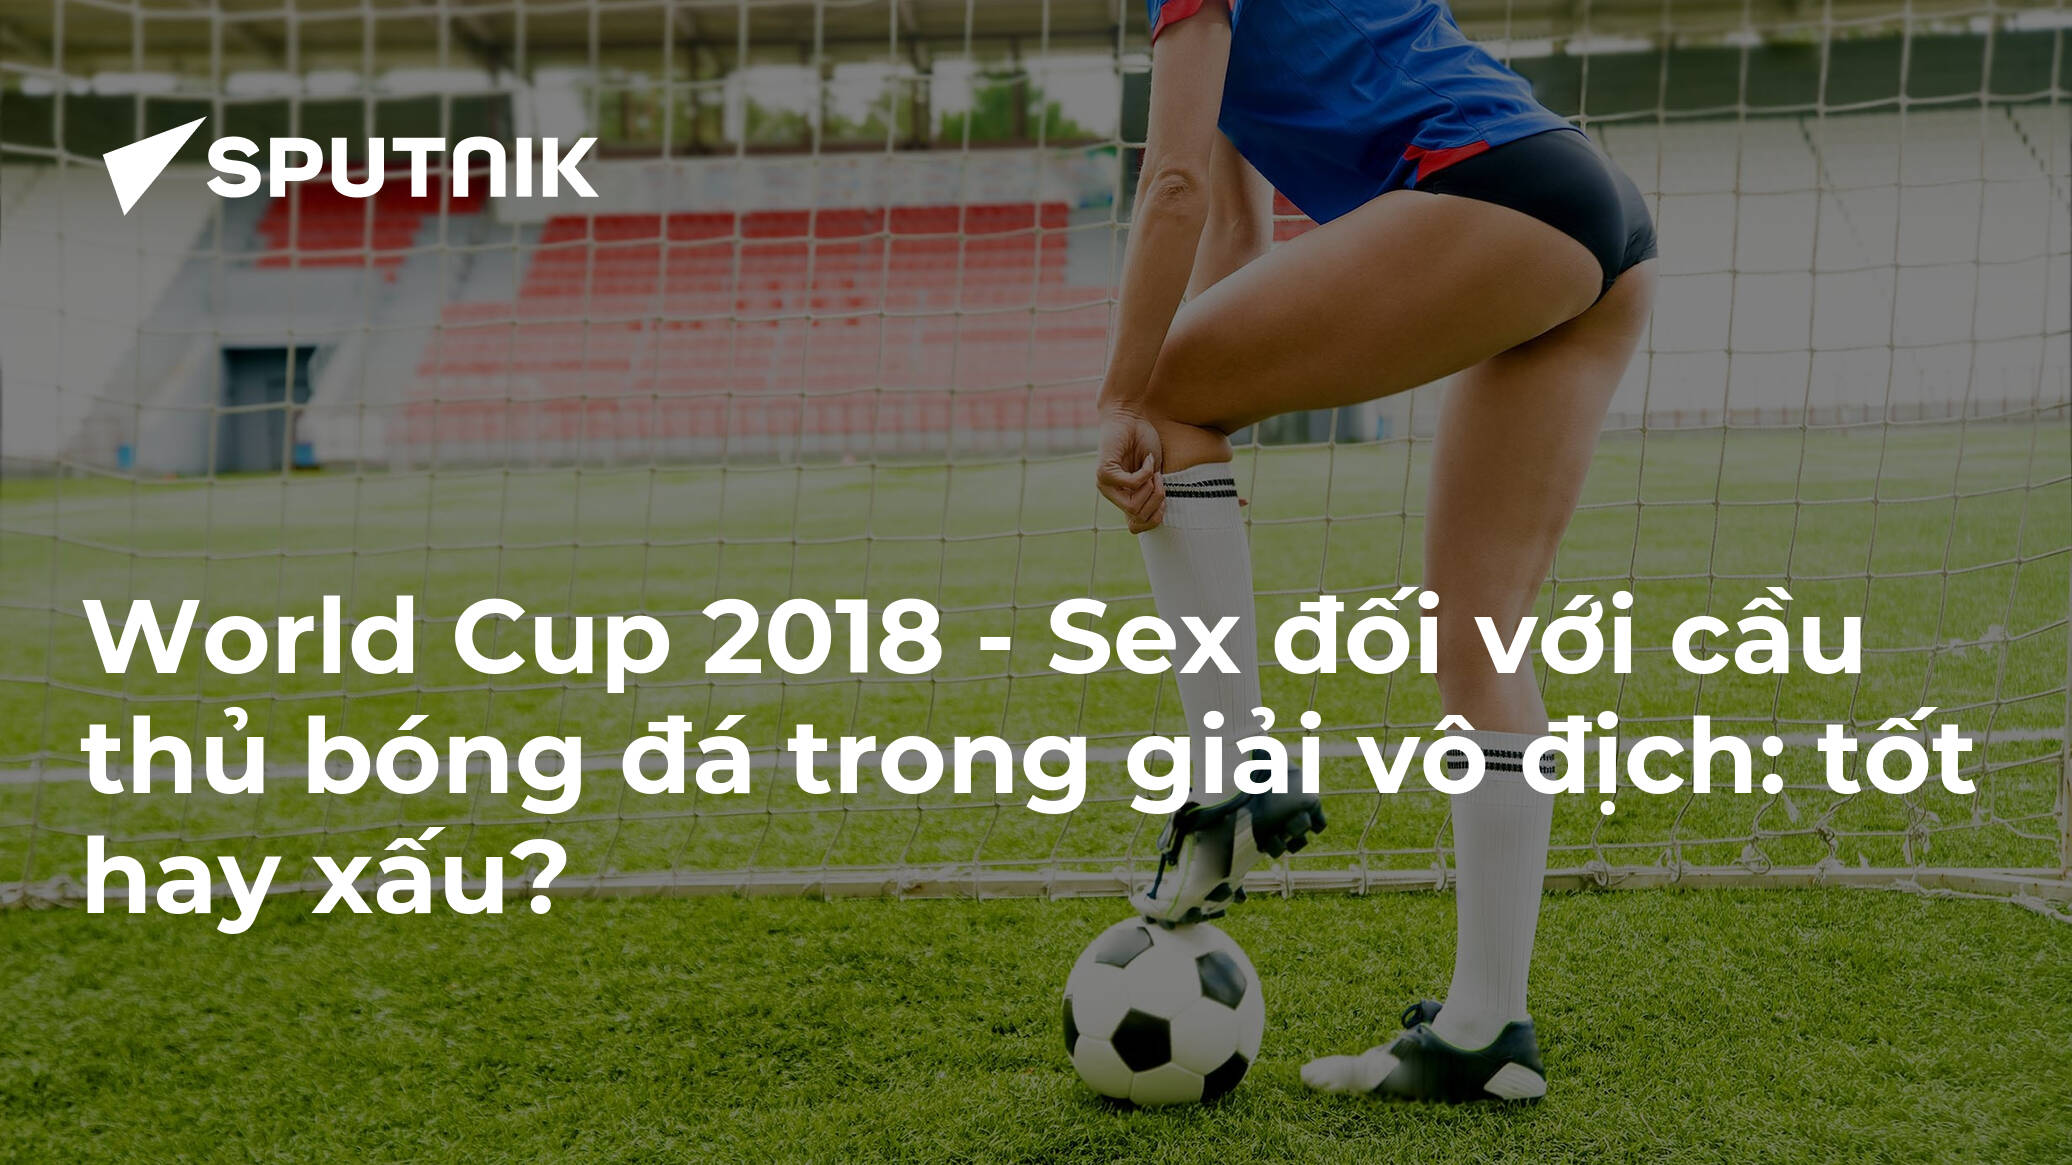 World Cup 2018 Sex đối Với Cầu Thủ Bóng đá Trong Giải Vô địch Tốt Hay Xấu 15062018 9899